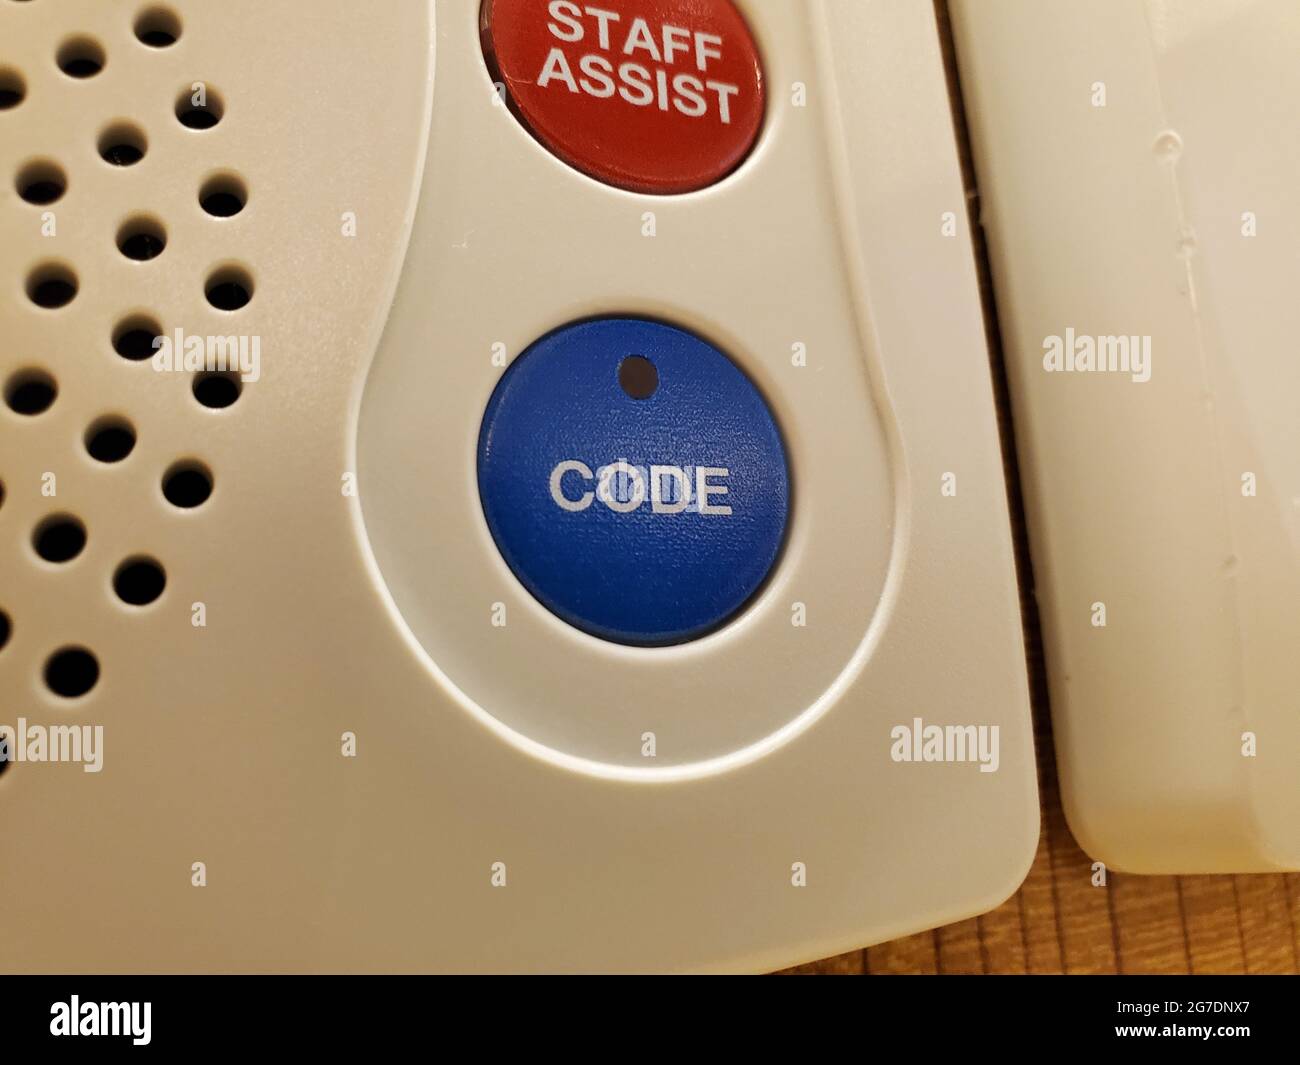 Primo piano dei pulsanti "Code" (Codice) e "Staff Assist" (Assistenza personale) su un sistema di chiamata infermiere in un ambiente medico a San Francisco, California, 18 aprile 2021. () Foto Stock